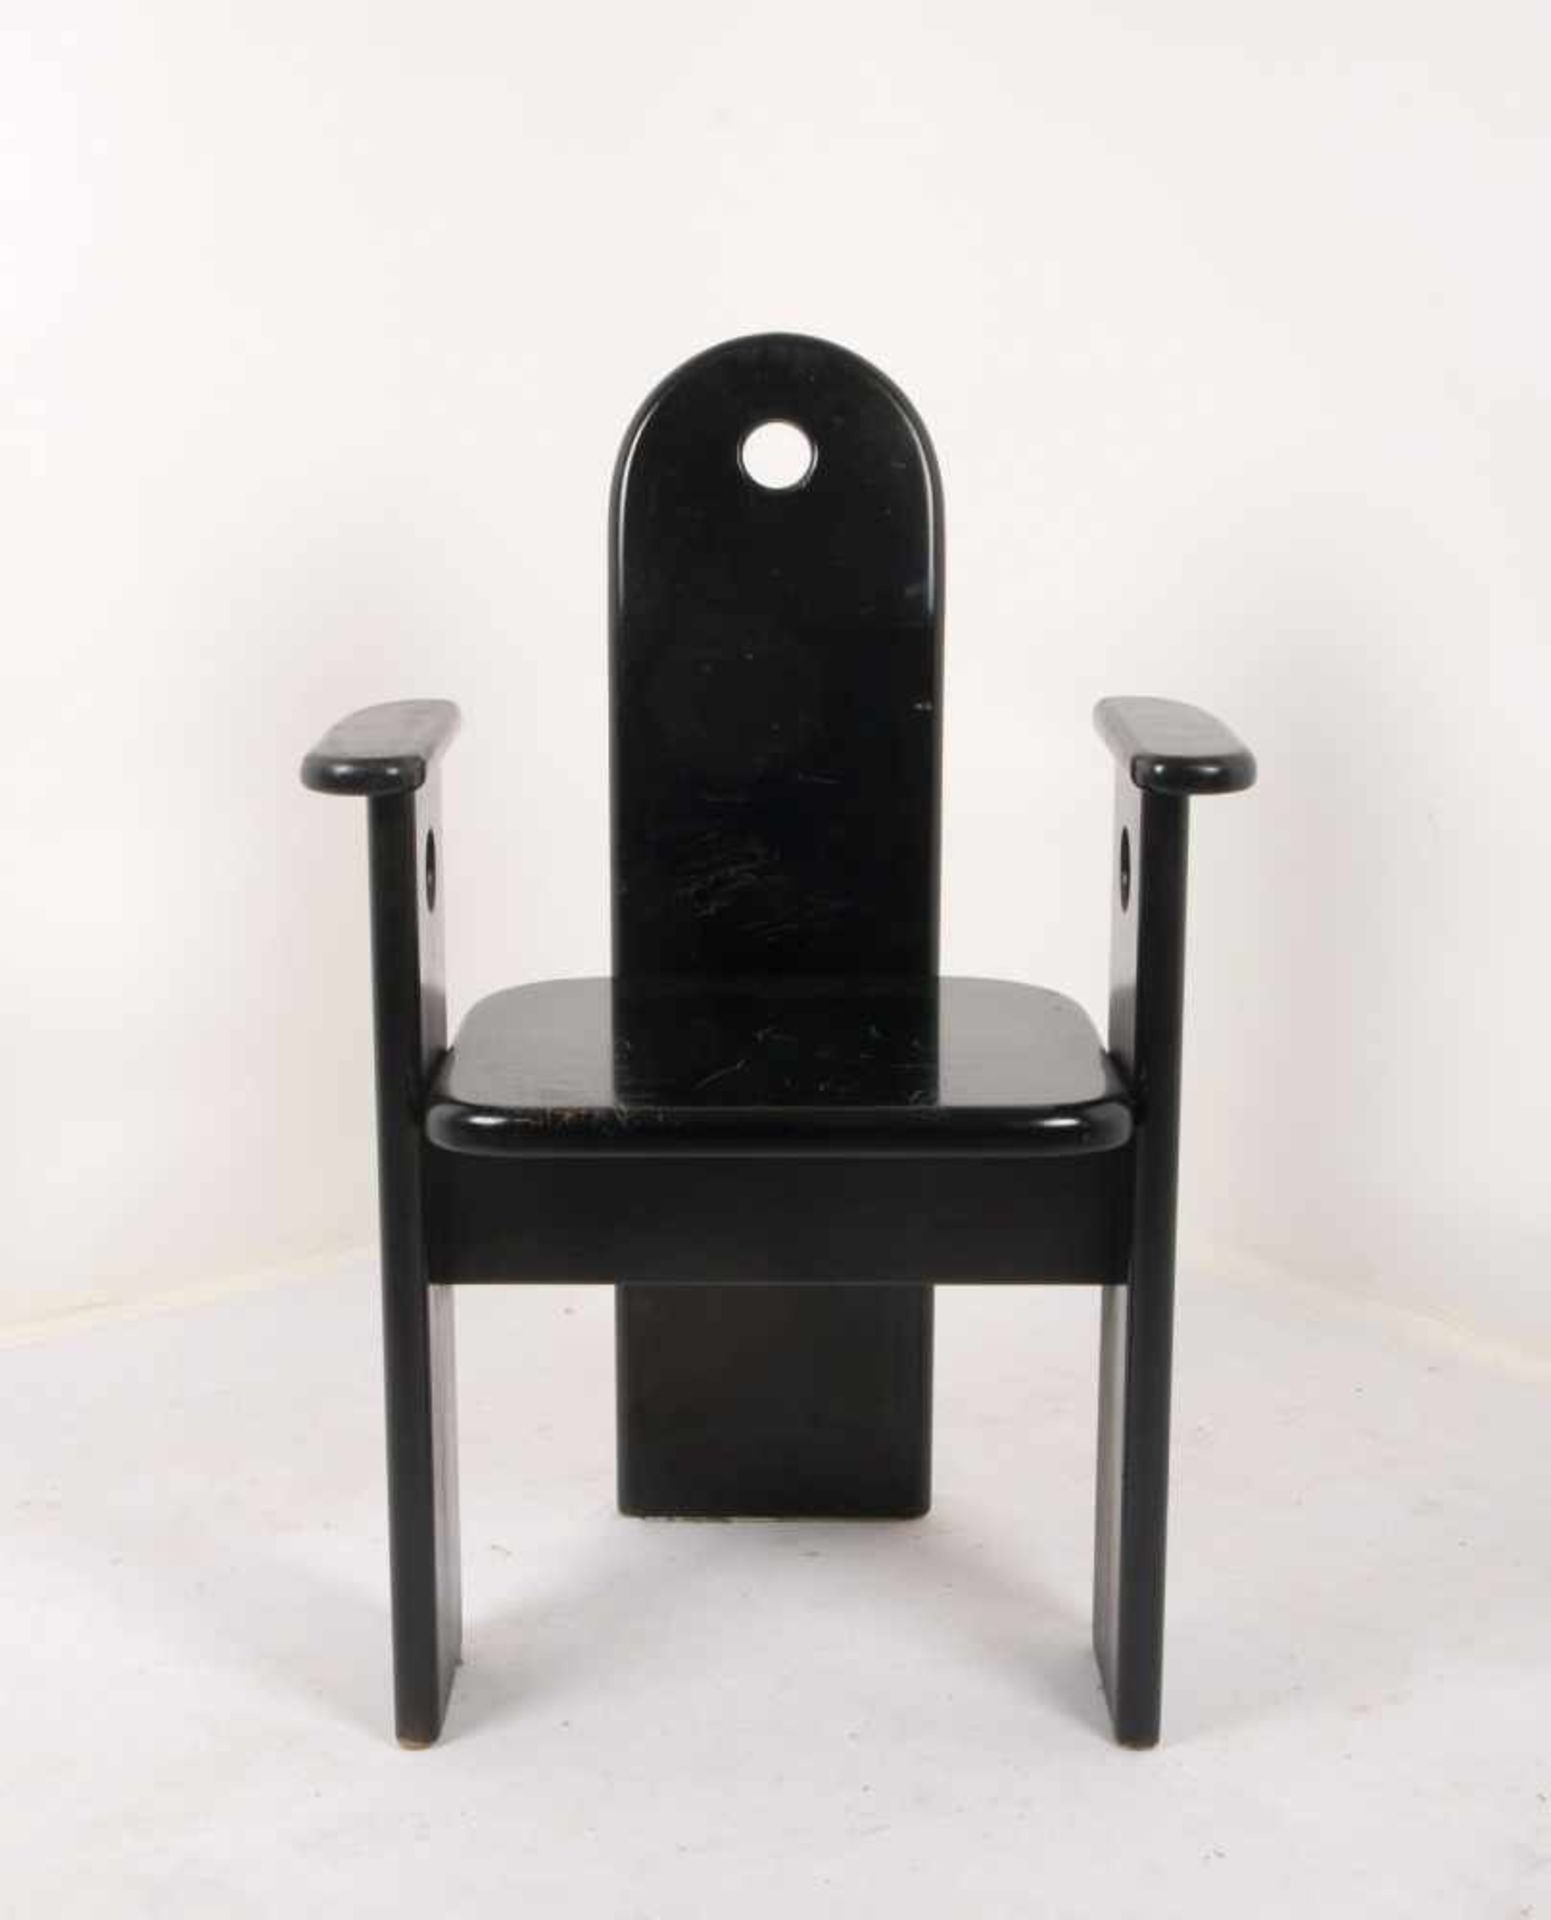 Designer-Armlehnstuhl, Holz schwarz lackiert; Lehnhöhe 92 cm, Sitzhöhe 45 cm (Sitzfläche mit - Bild 2 aus 2